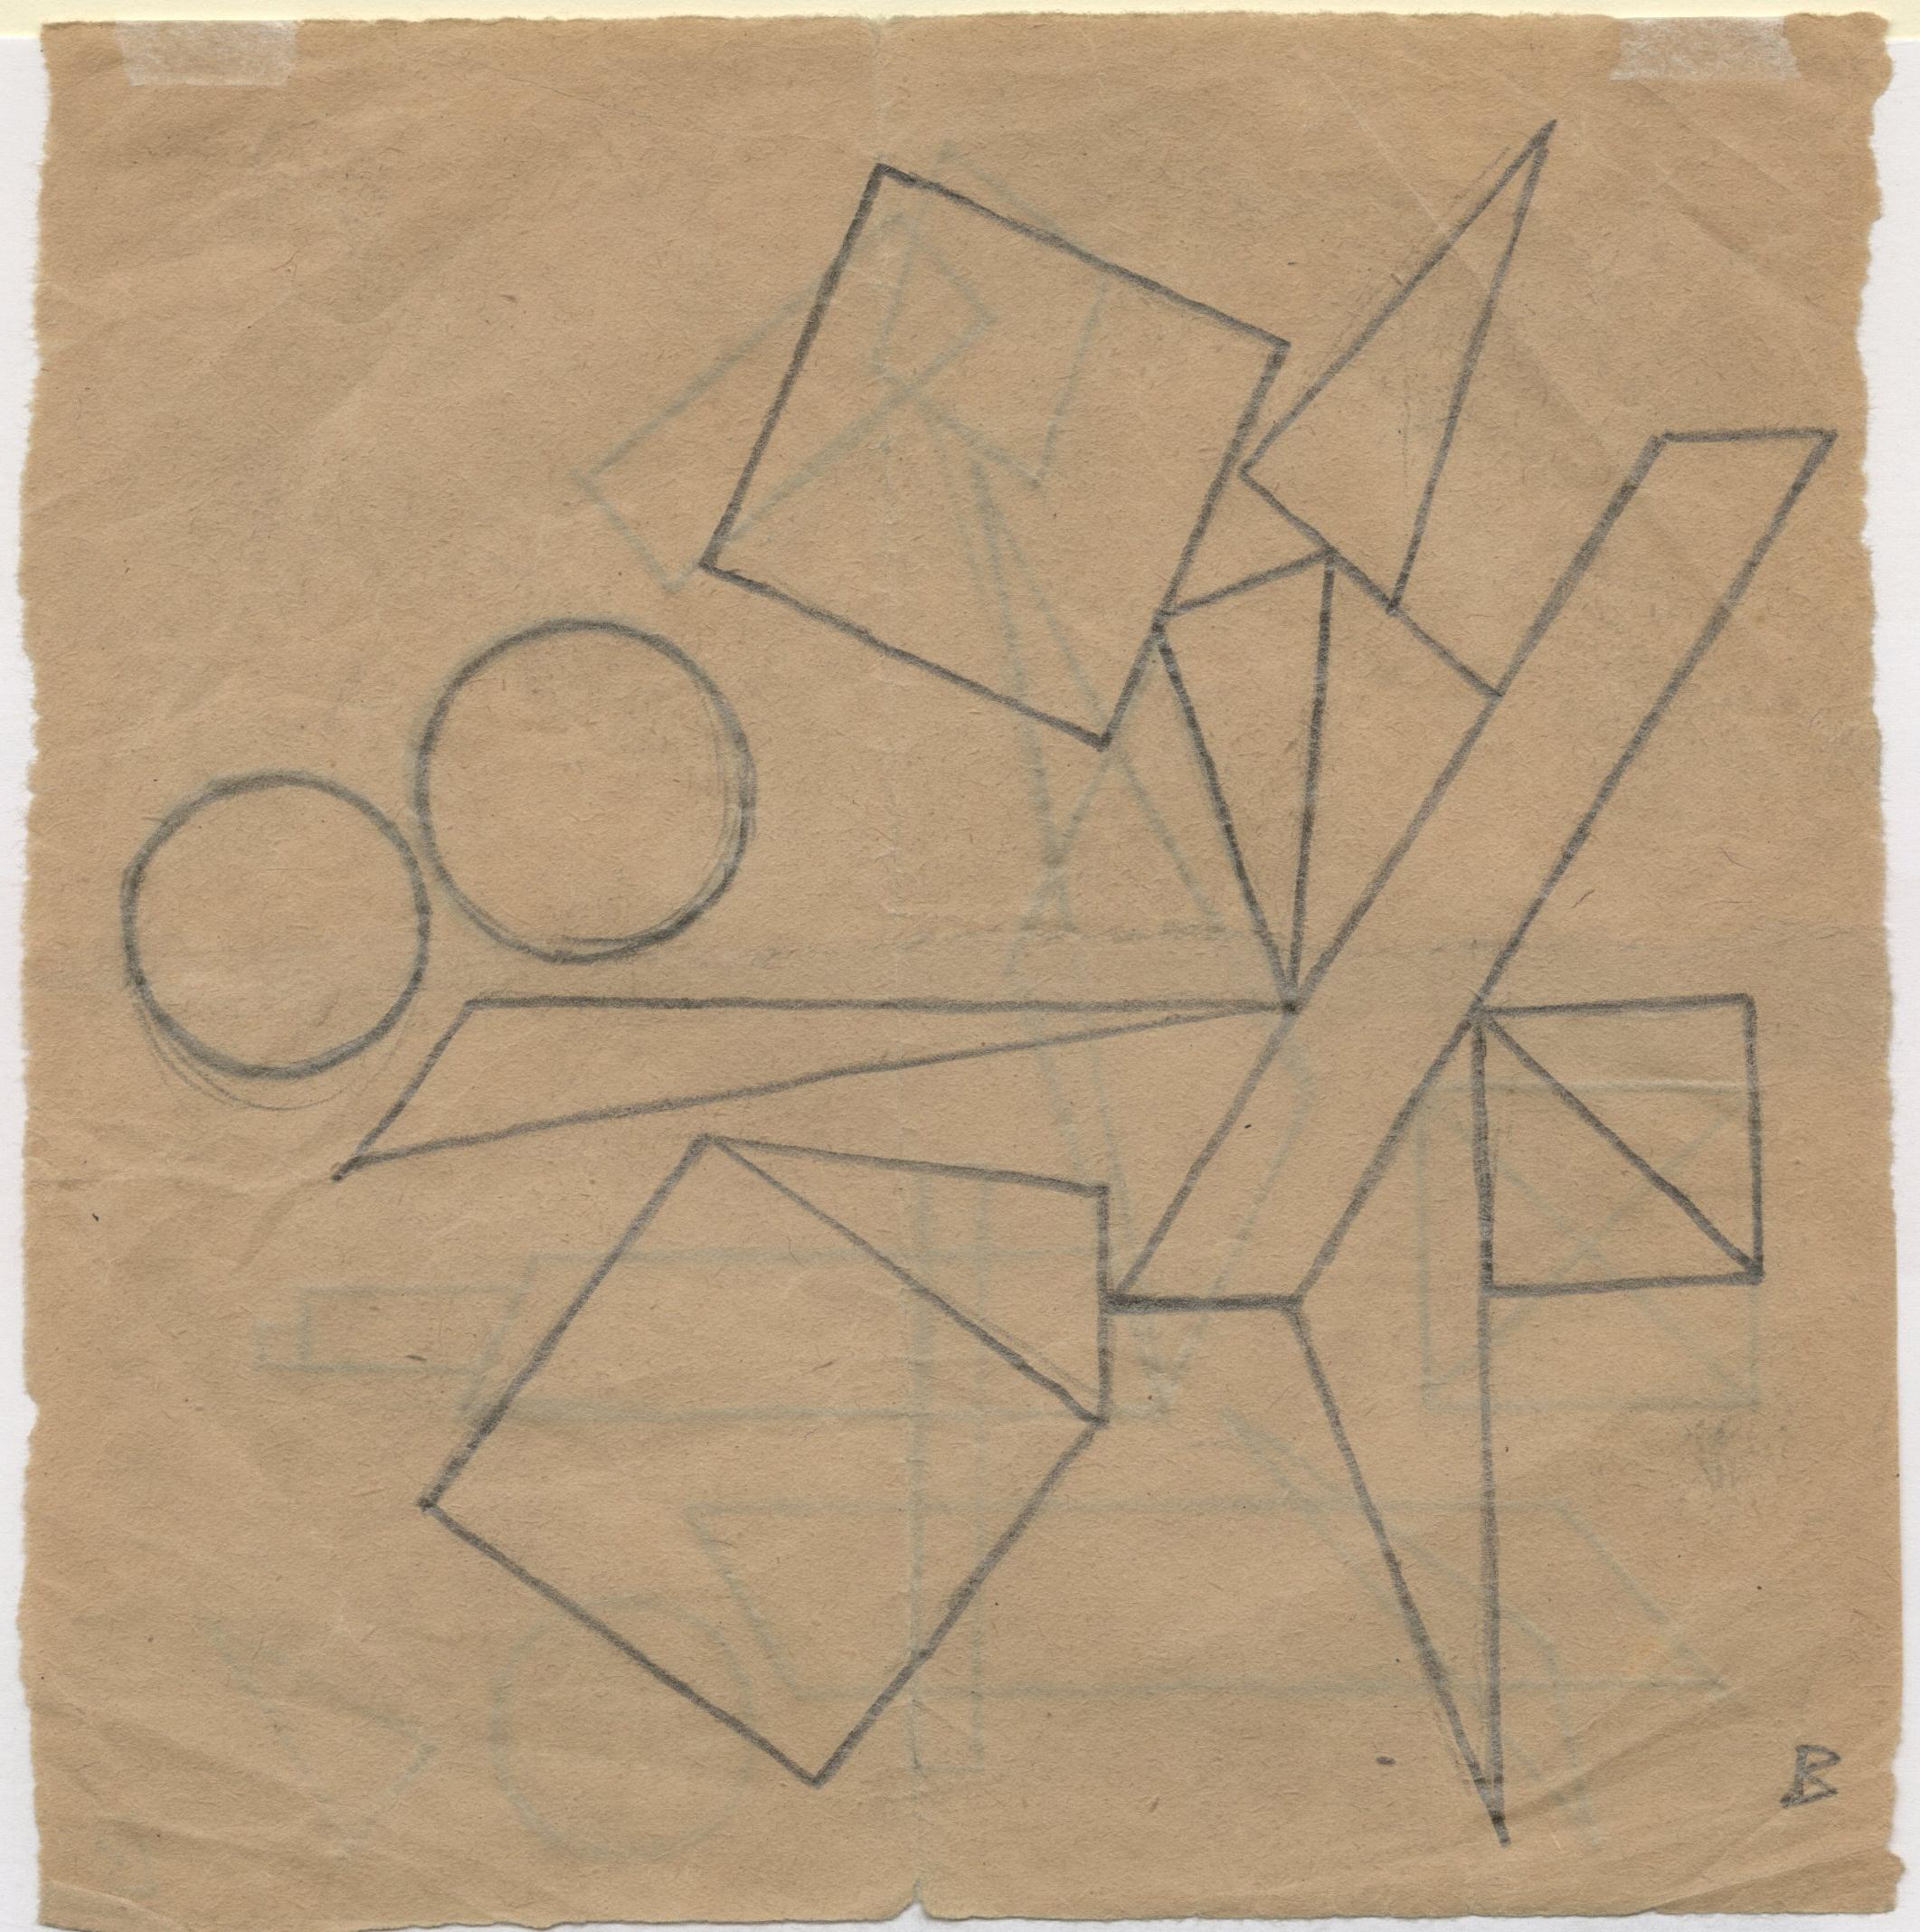 Gegenstandslose Zeichnung (doppelseitige Komposition)
Graphit auf Papier, 1938
Vom Künstler in der rechten unteren Ecke mit 